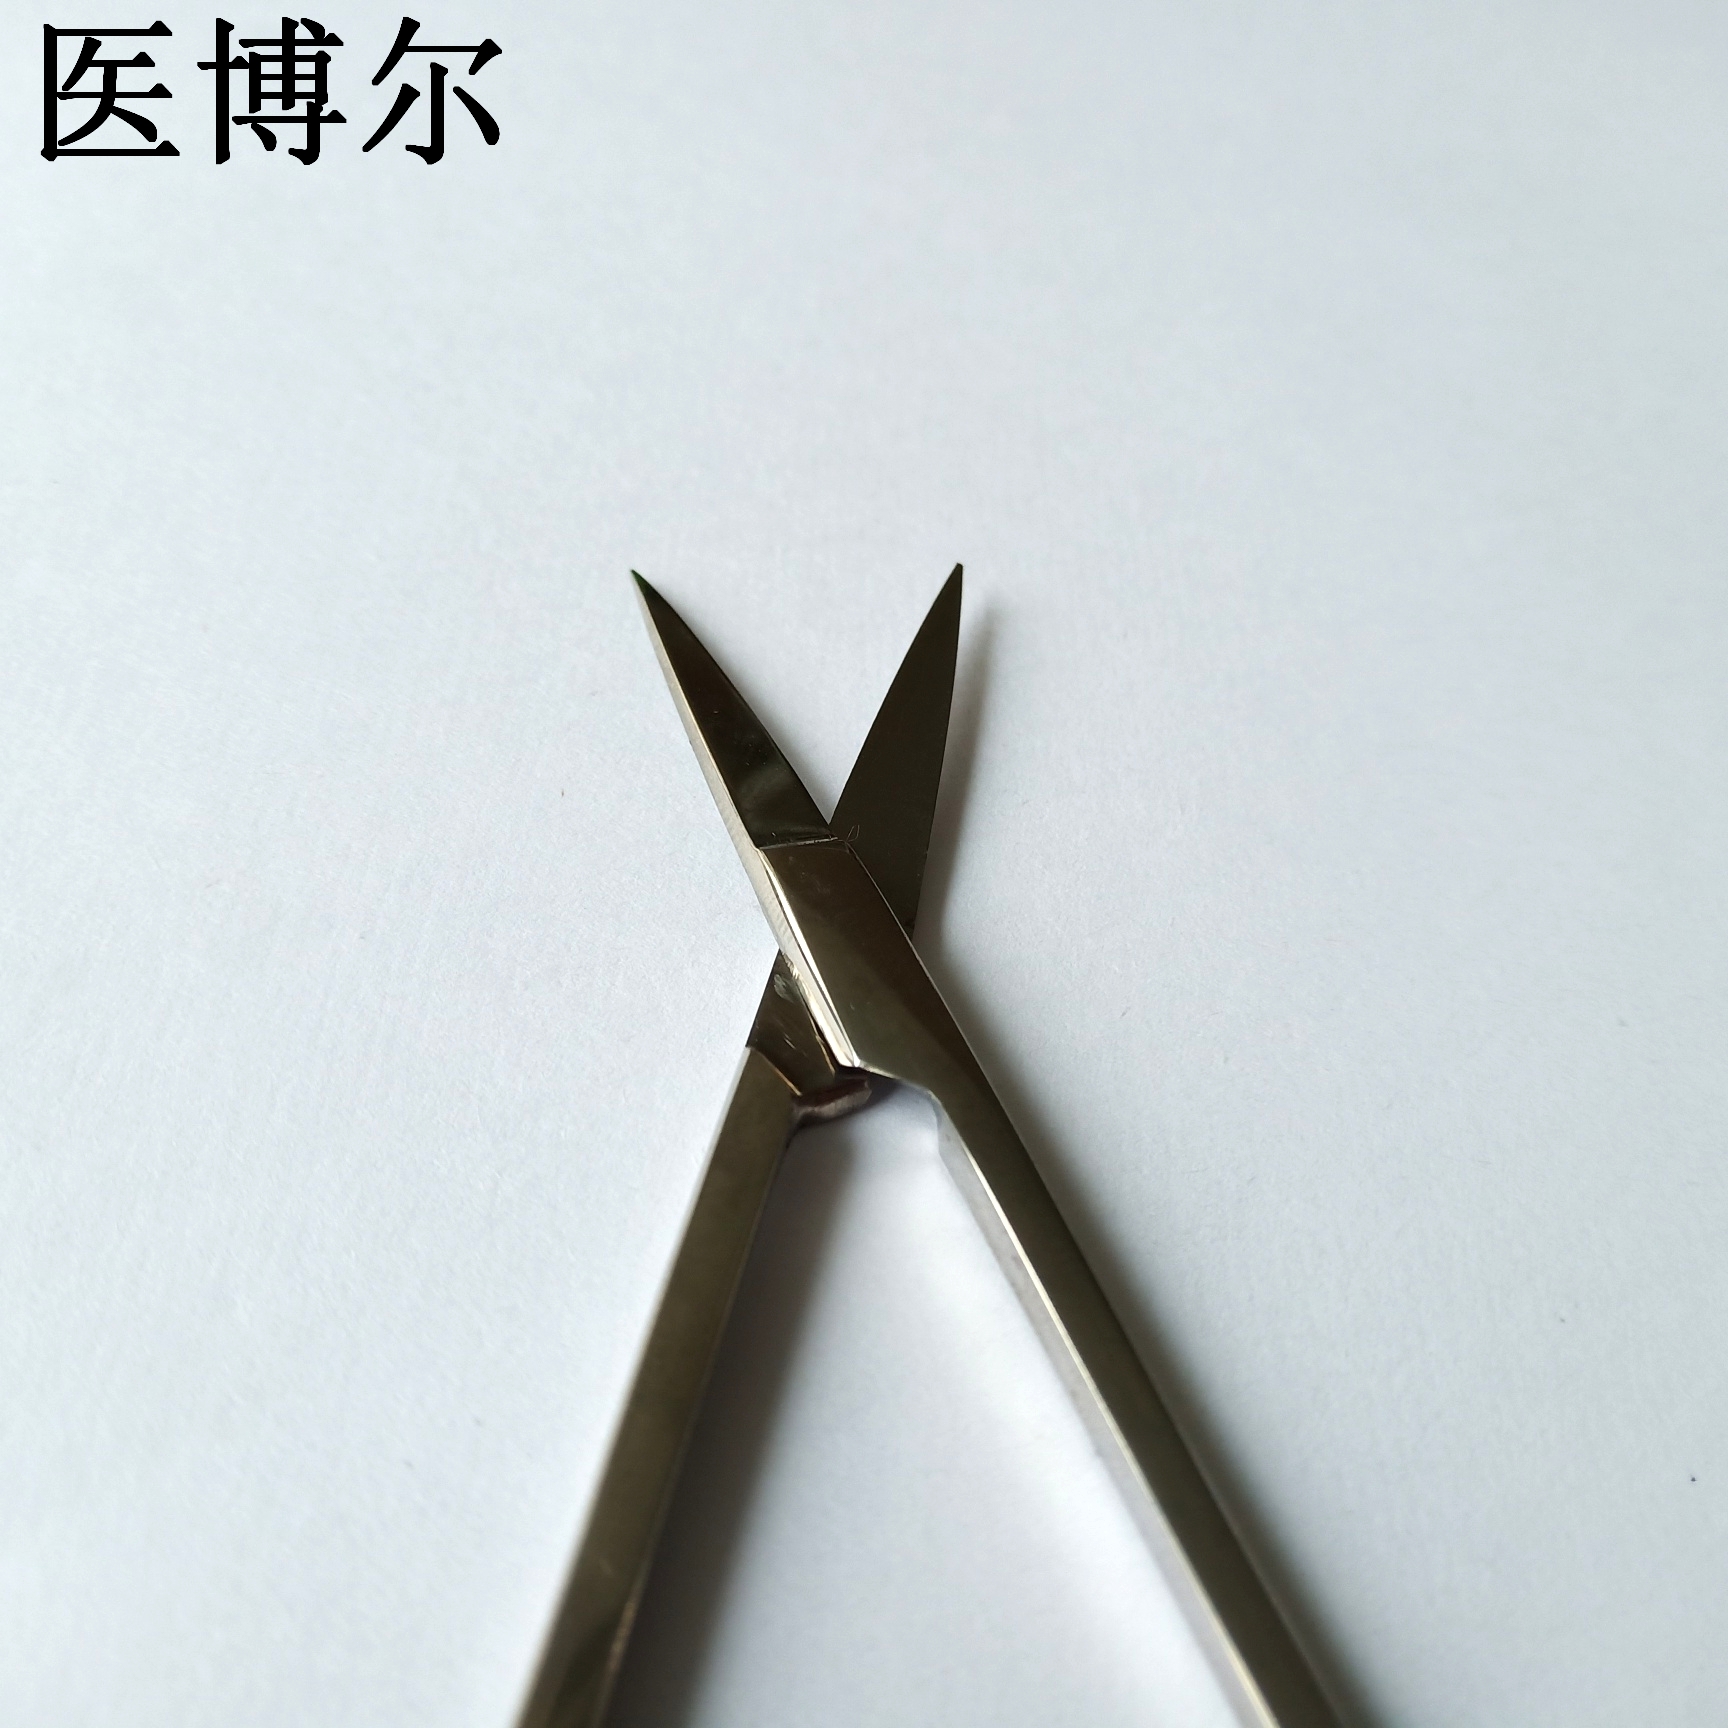 11.5cm板材剪刀 (6)_看图王.jpg